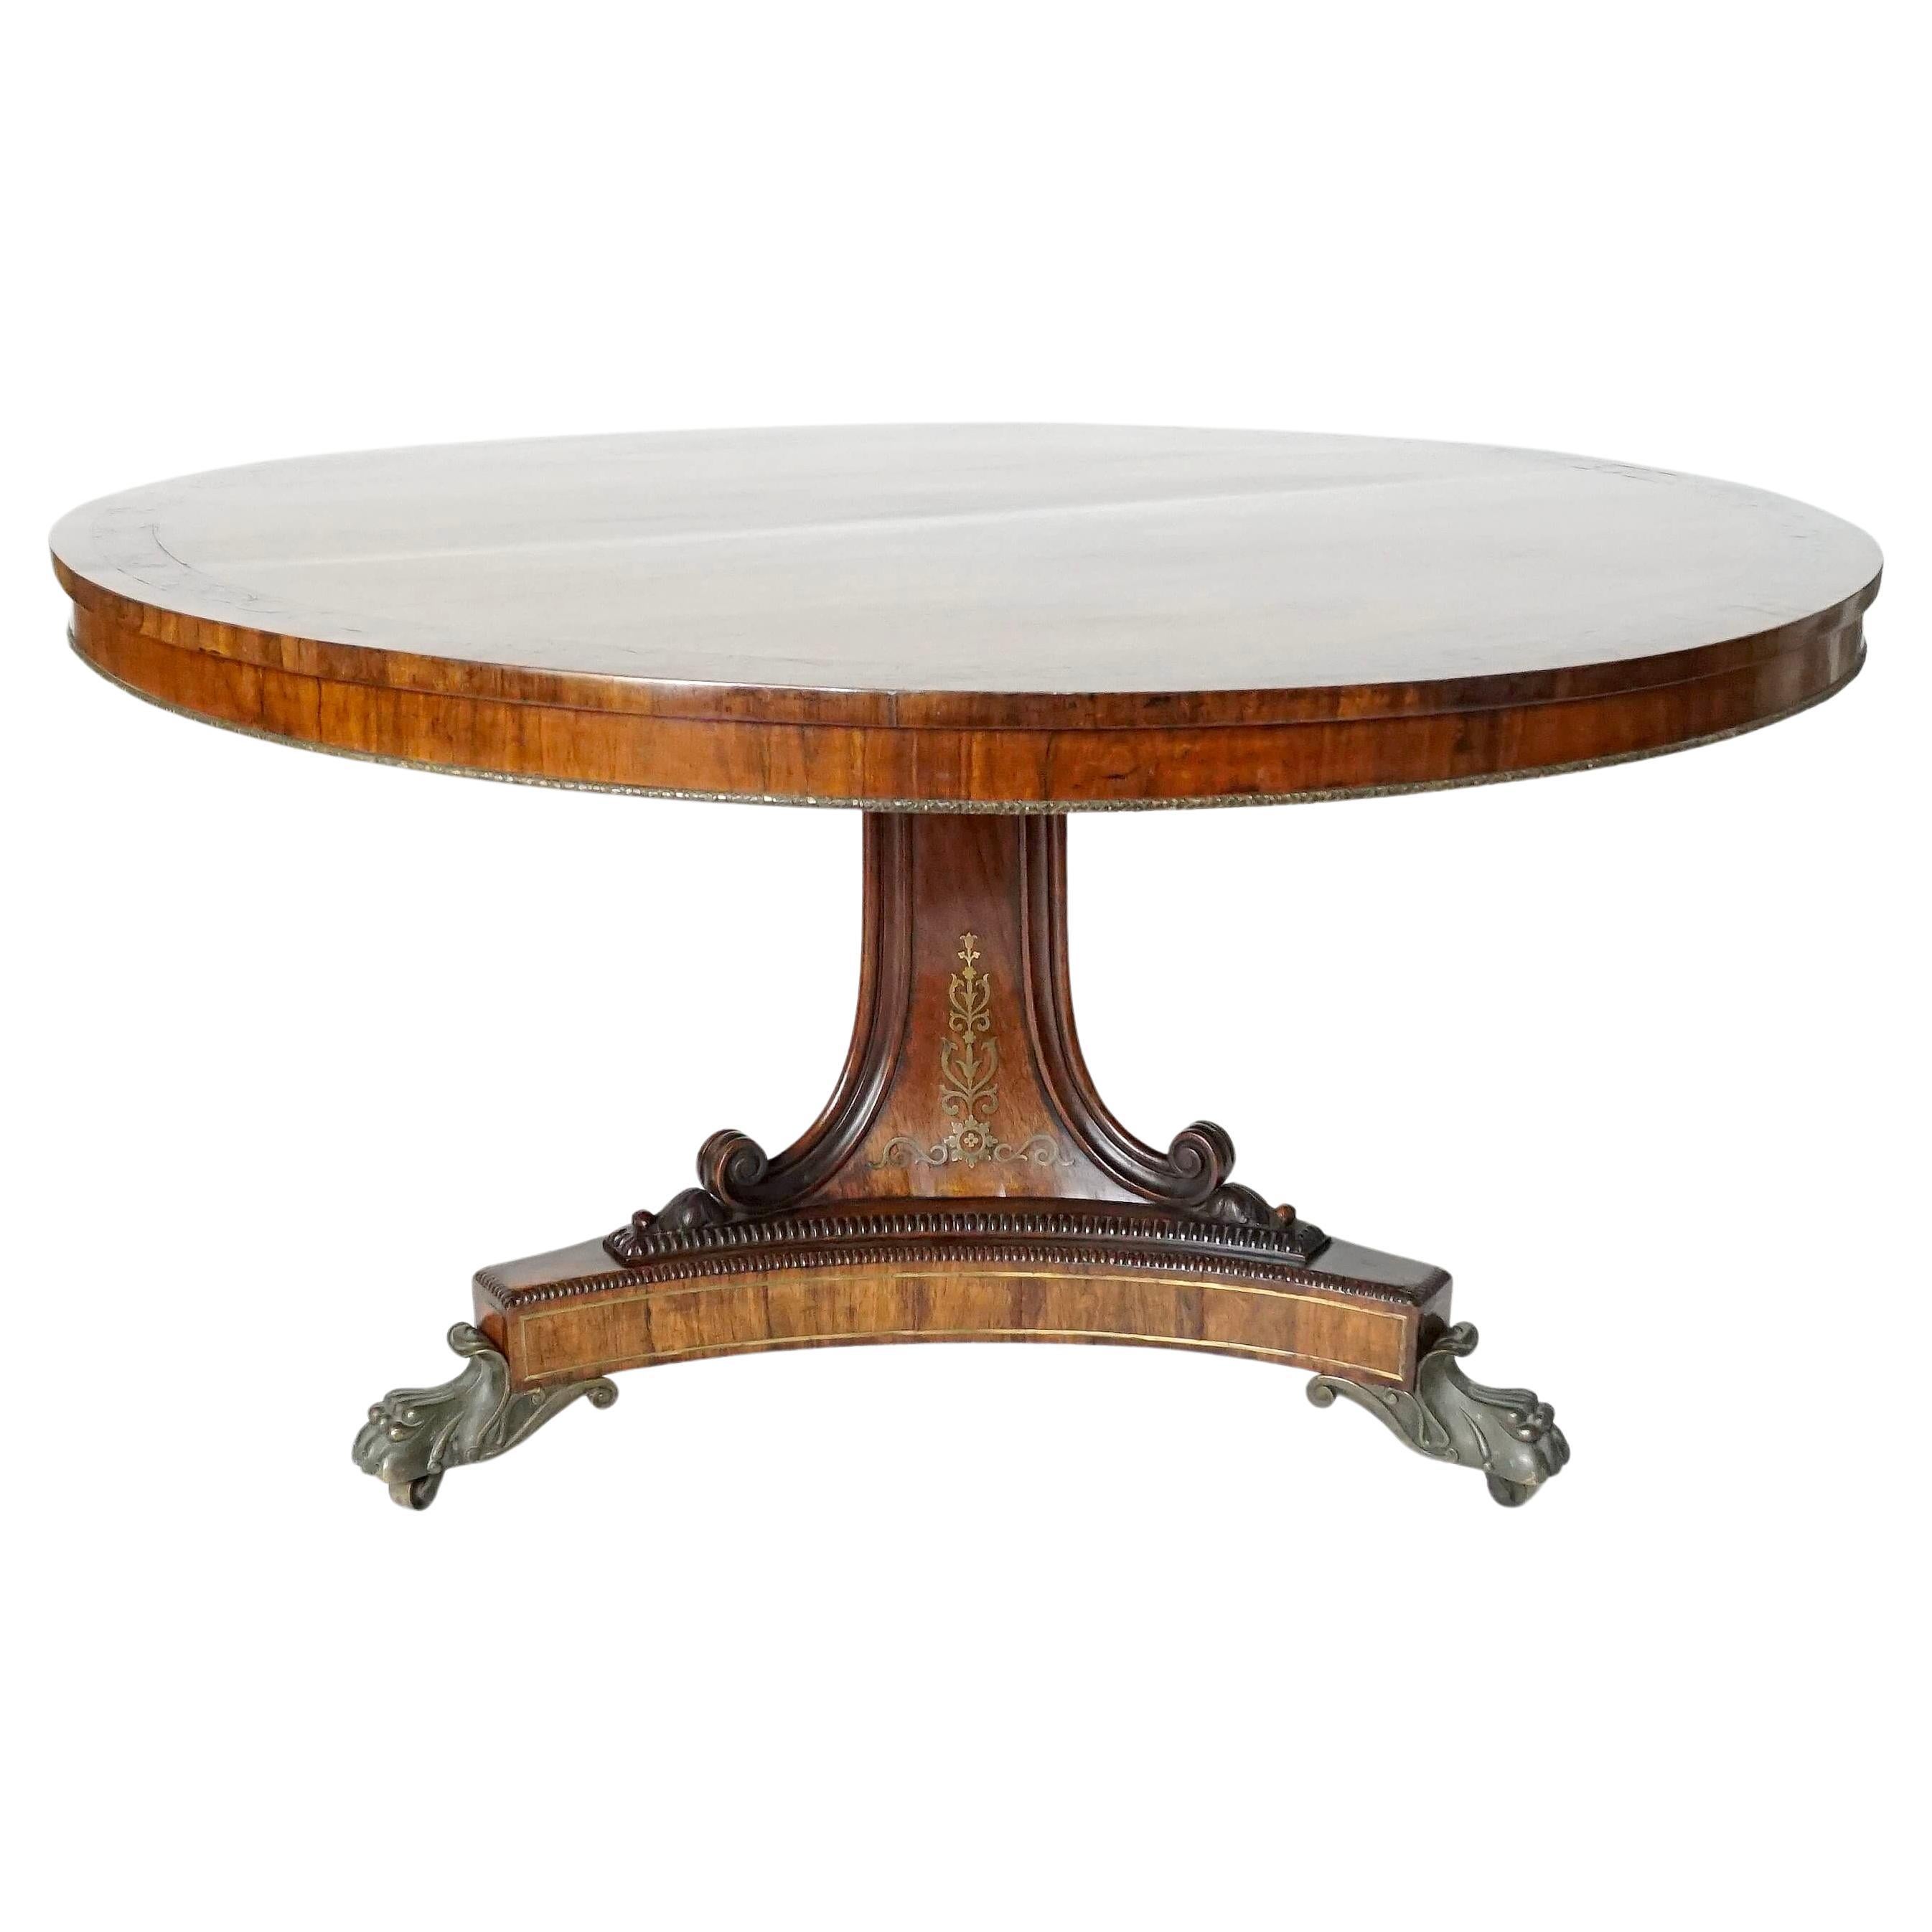 Table centrale de style Régence anglaise à plateau basculant en bois de rose incrusté de laiton, vers 1820